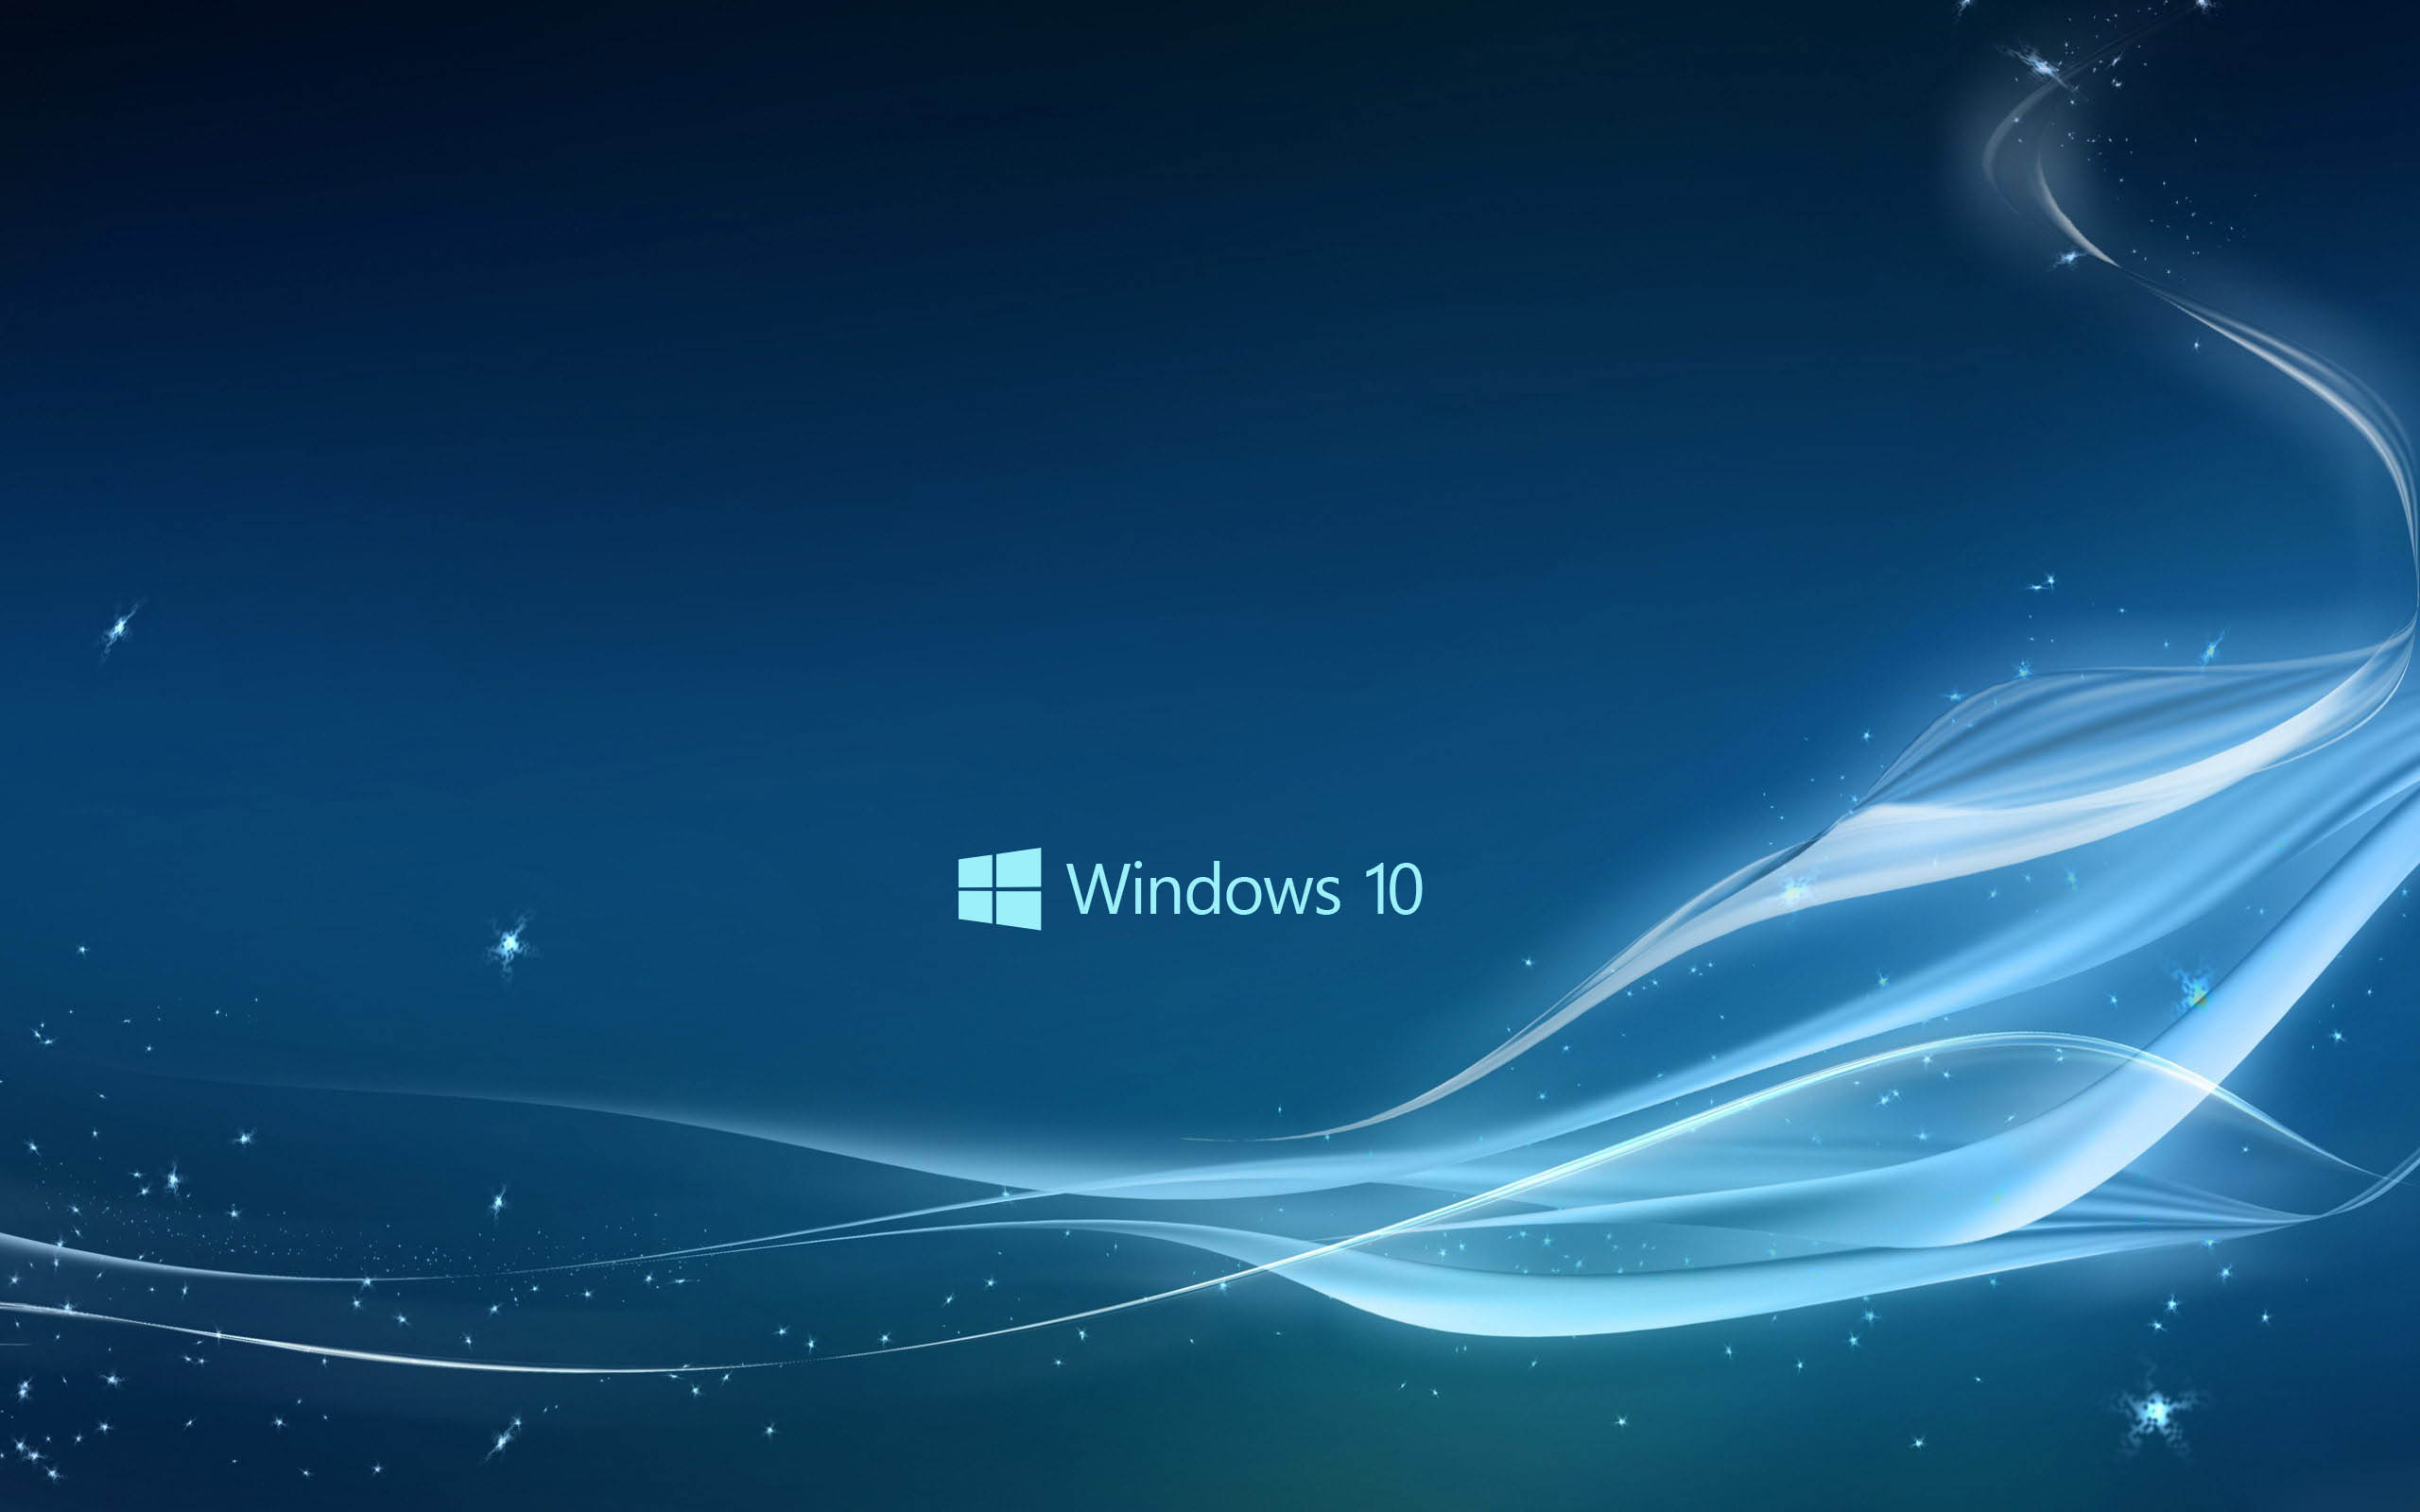 New Blue Windows 10 Wallpaper HD 12439 Wallpaper High Resolution